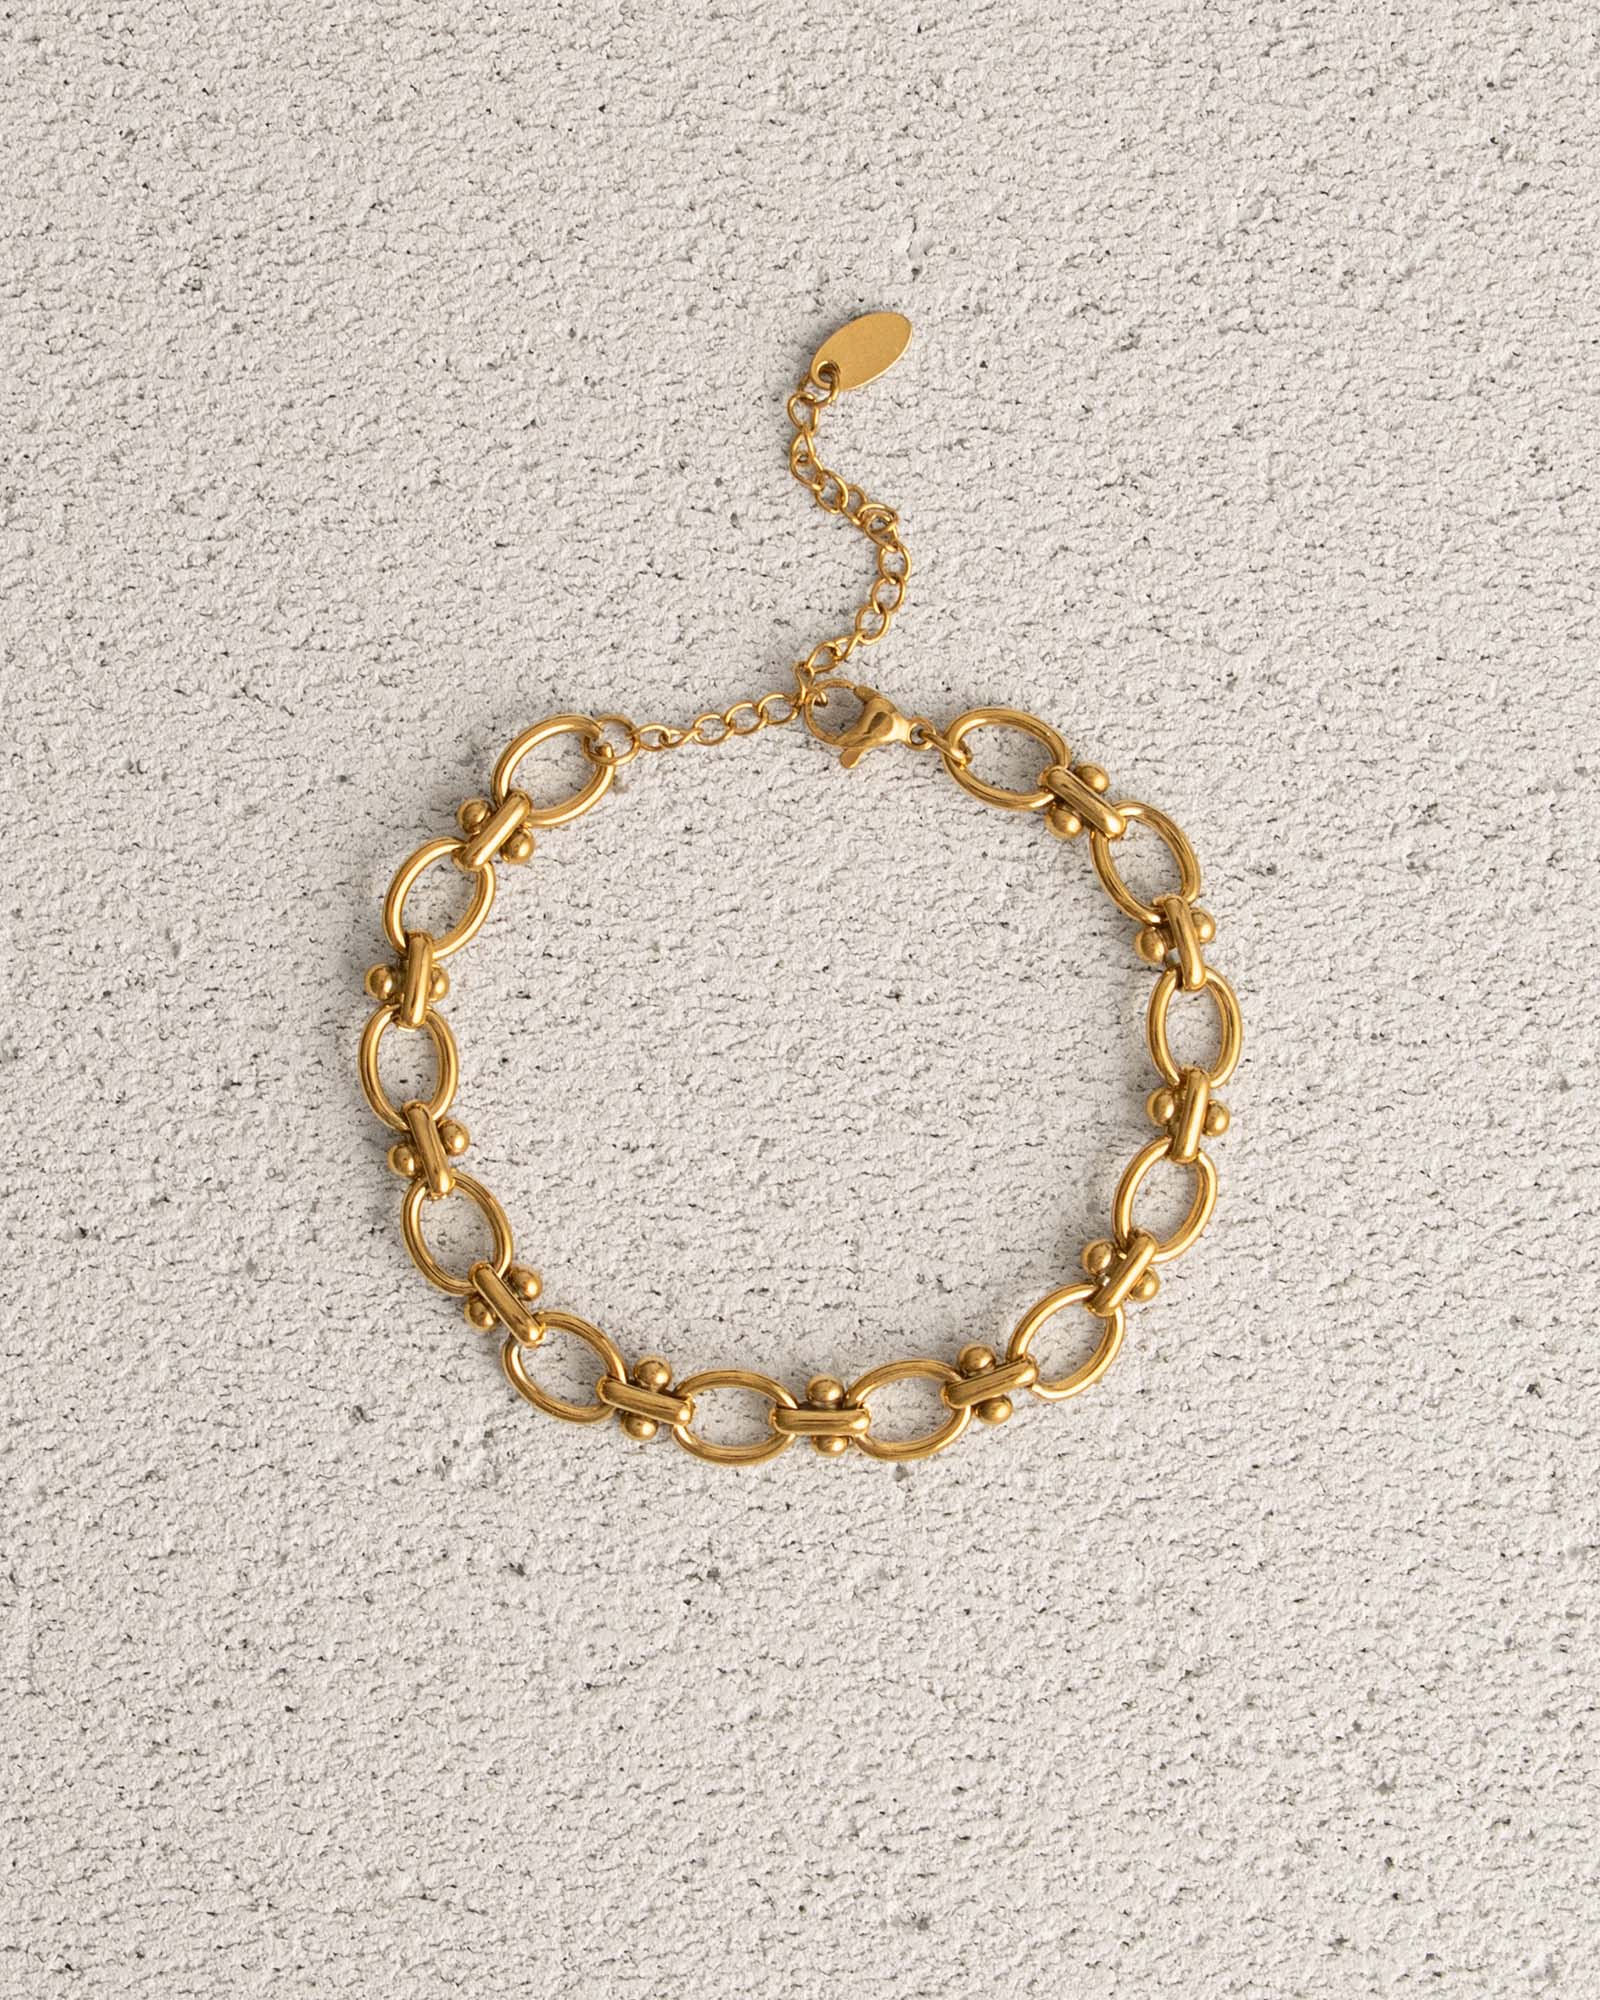 Bracelet magnétique cuivre Athena